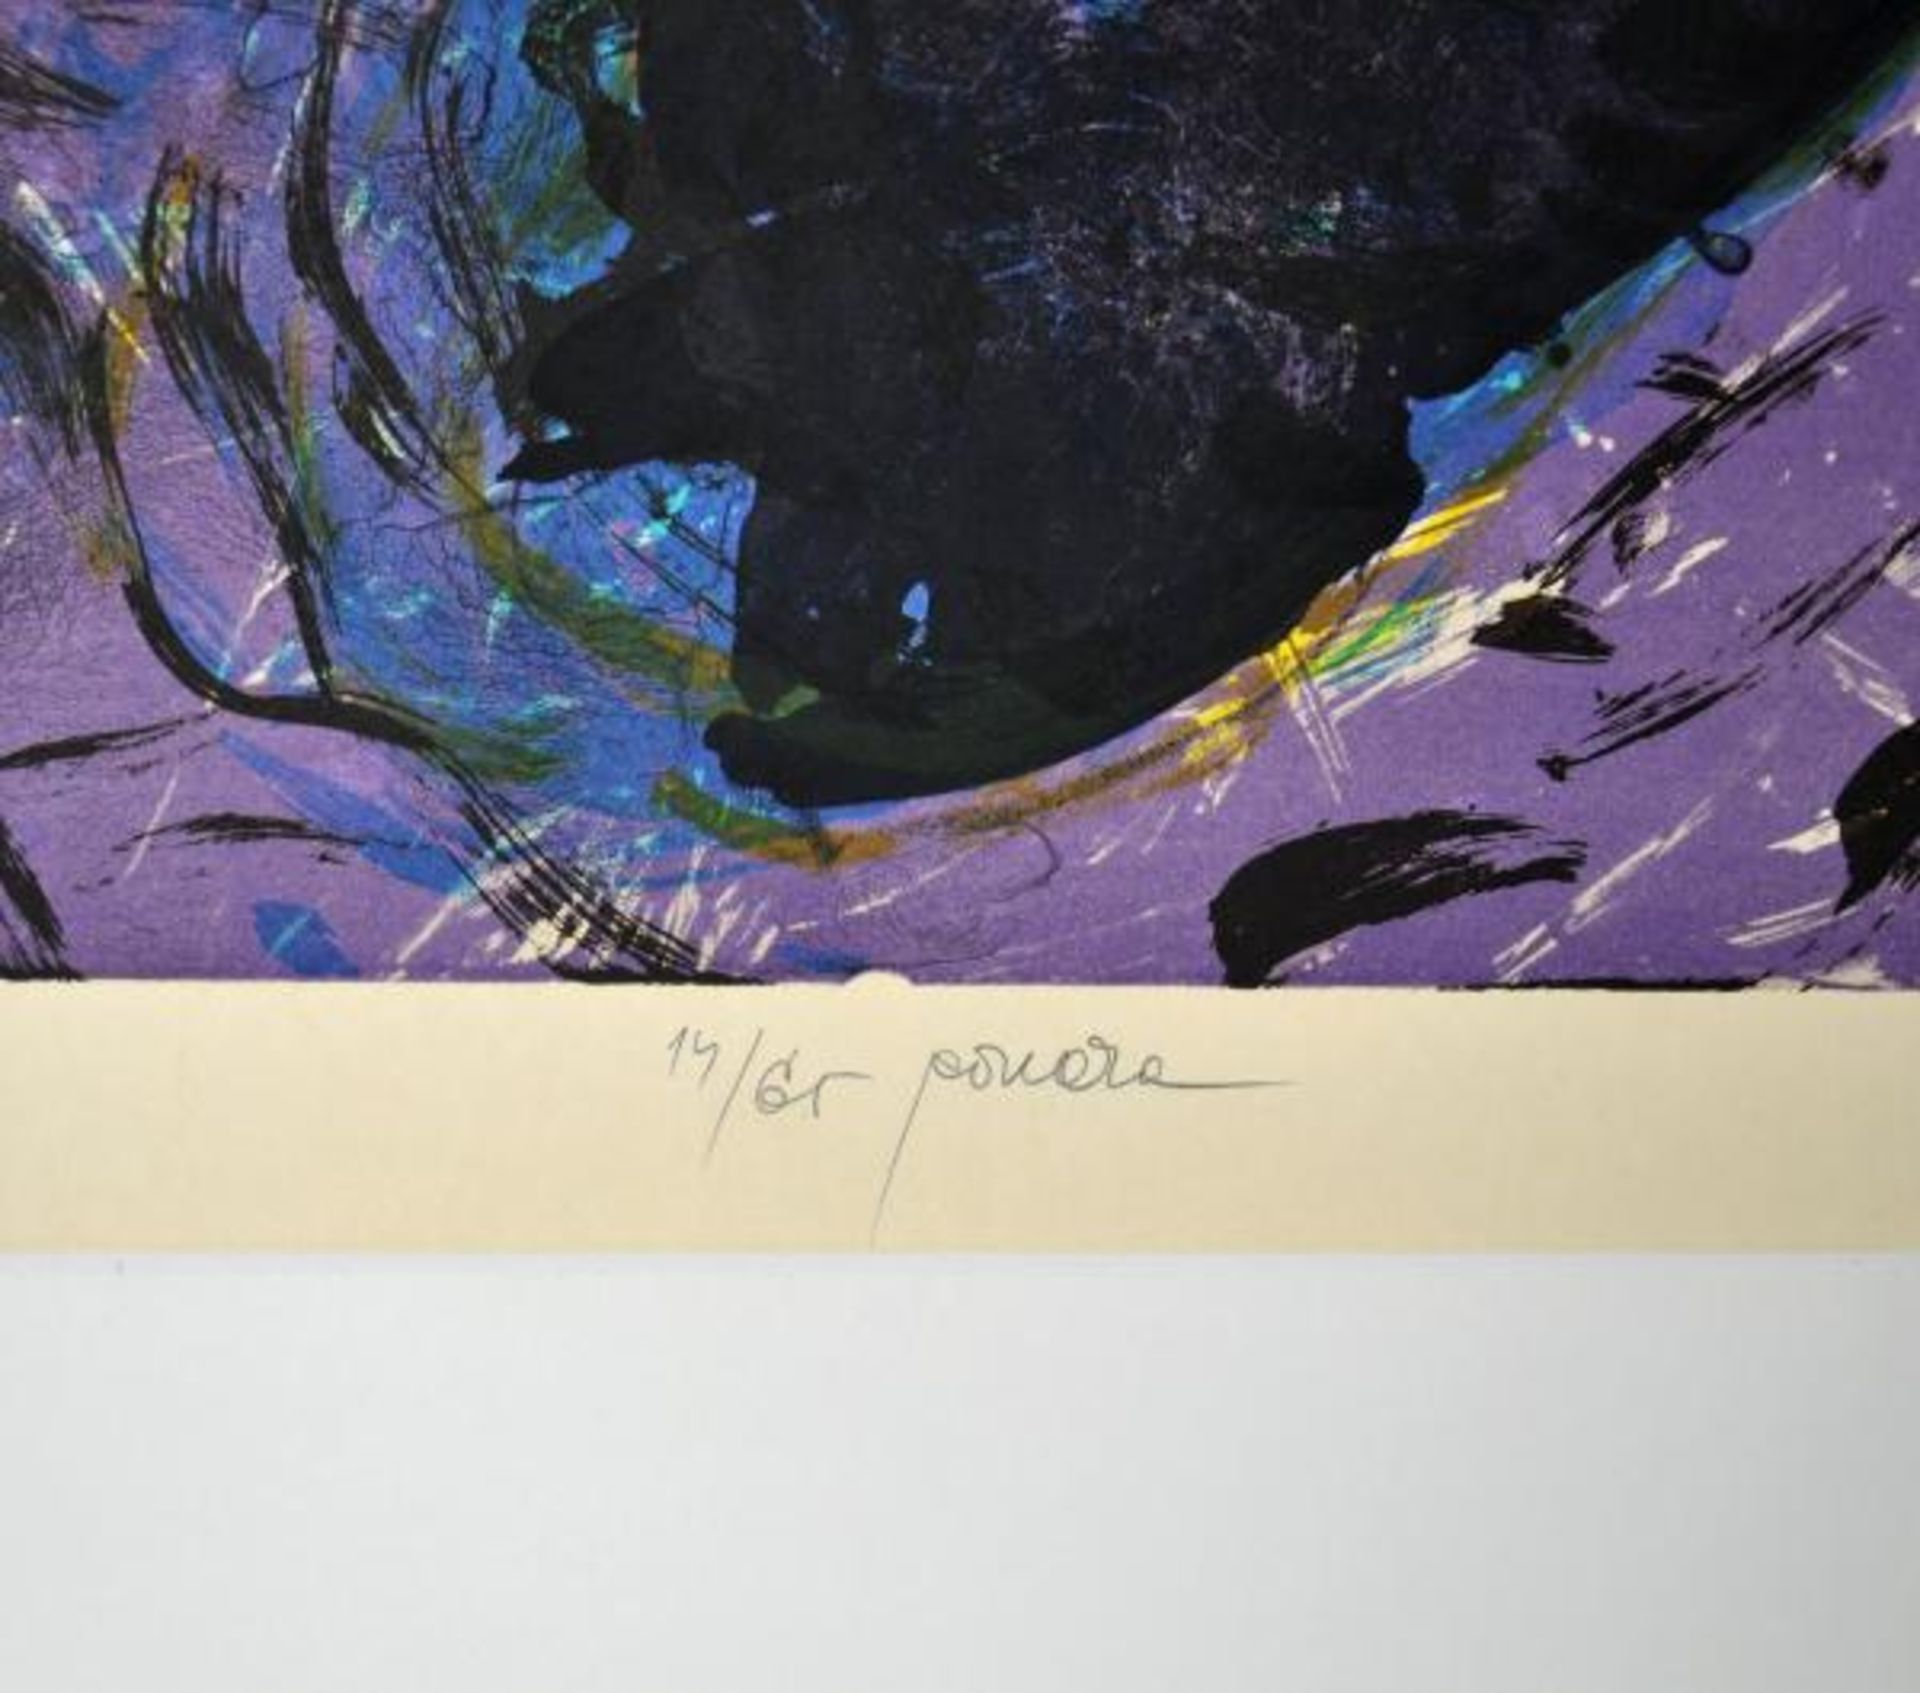 ROUCKA Pavel (1942 Prag) "Abstrakt", polychrome abstrahierende Darstellung in gelb, grau u. violett, - Image 3 of 3